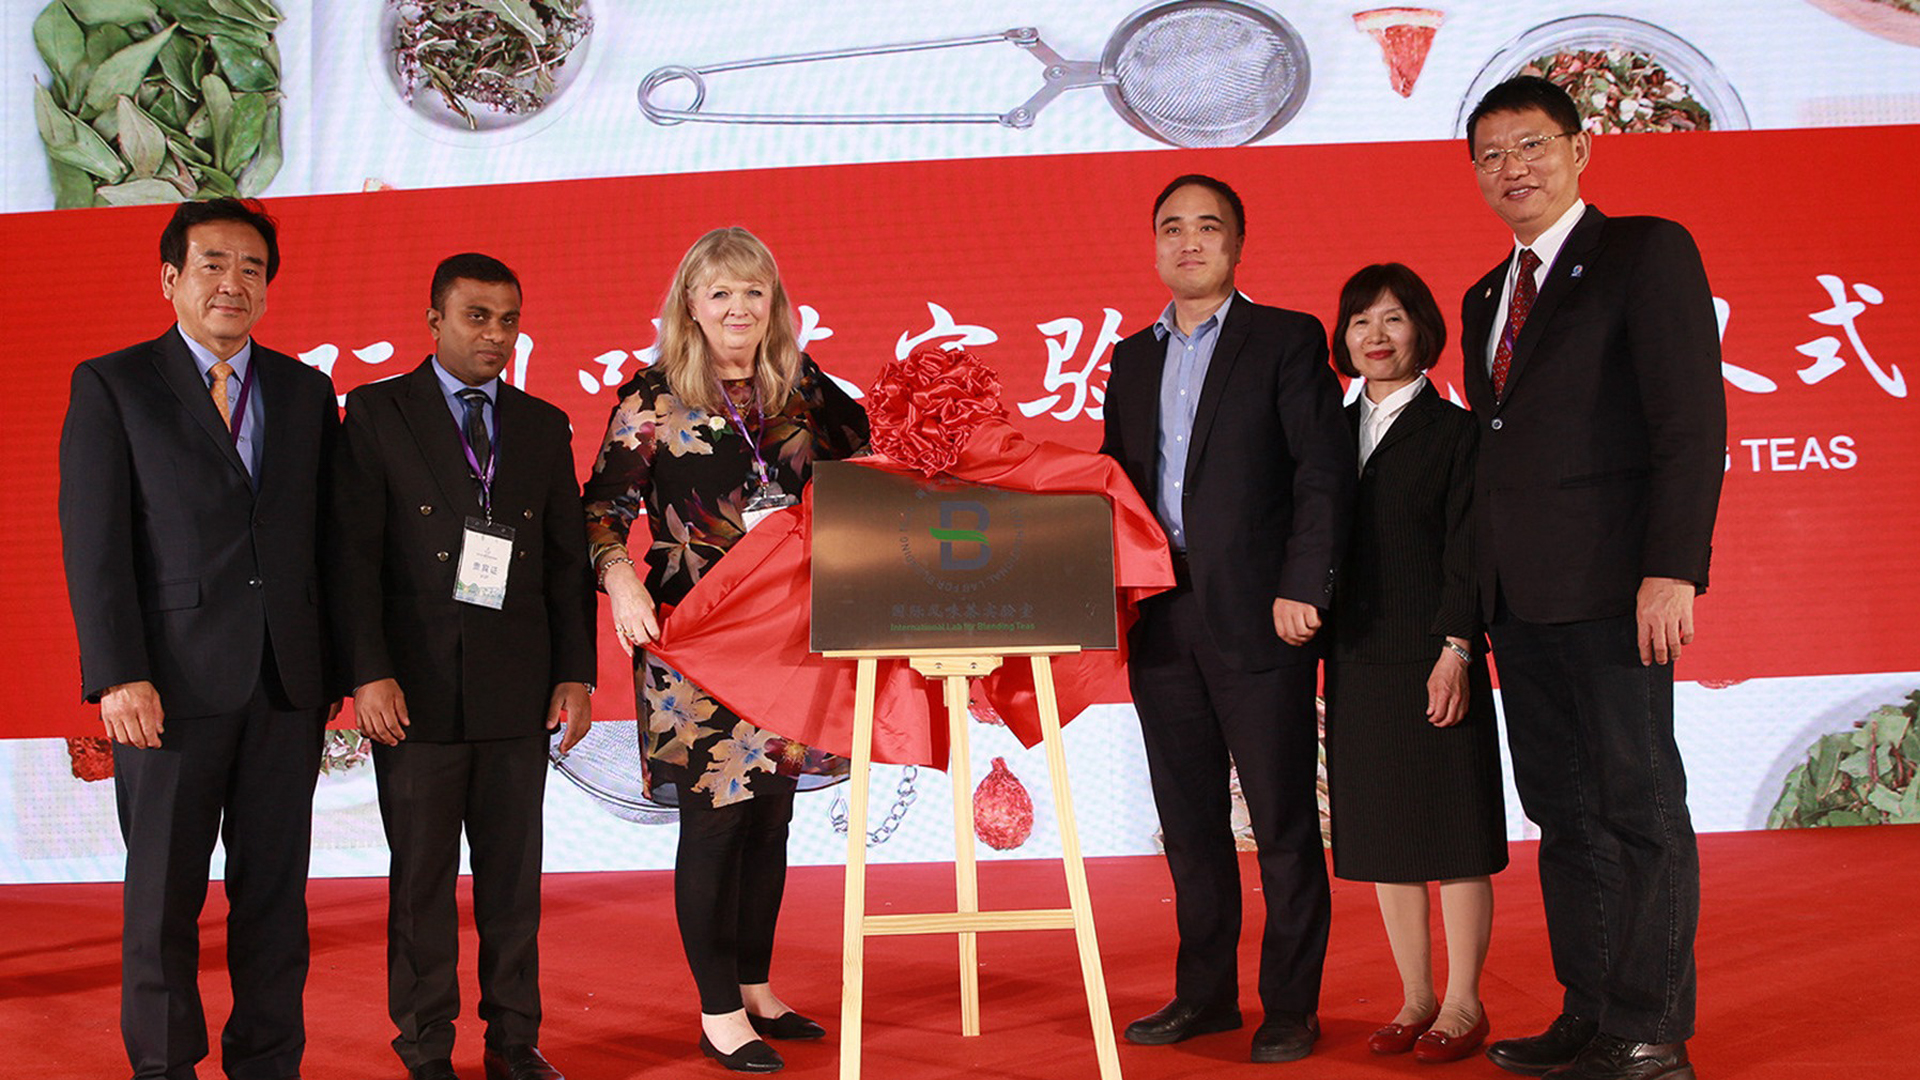 International Lab for Blending Teas  was established in Beijing